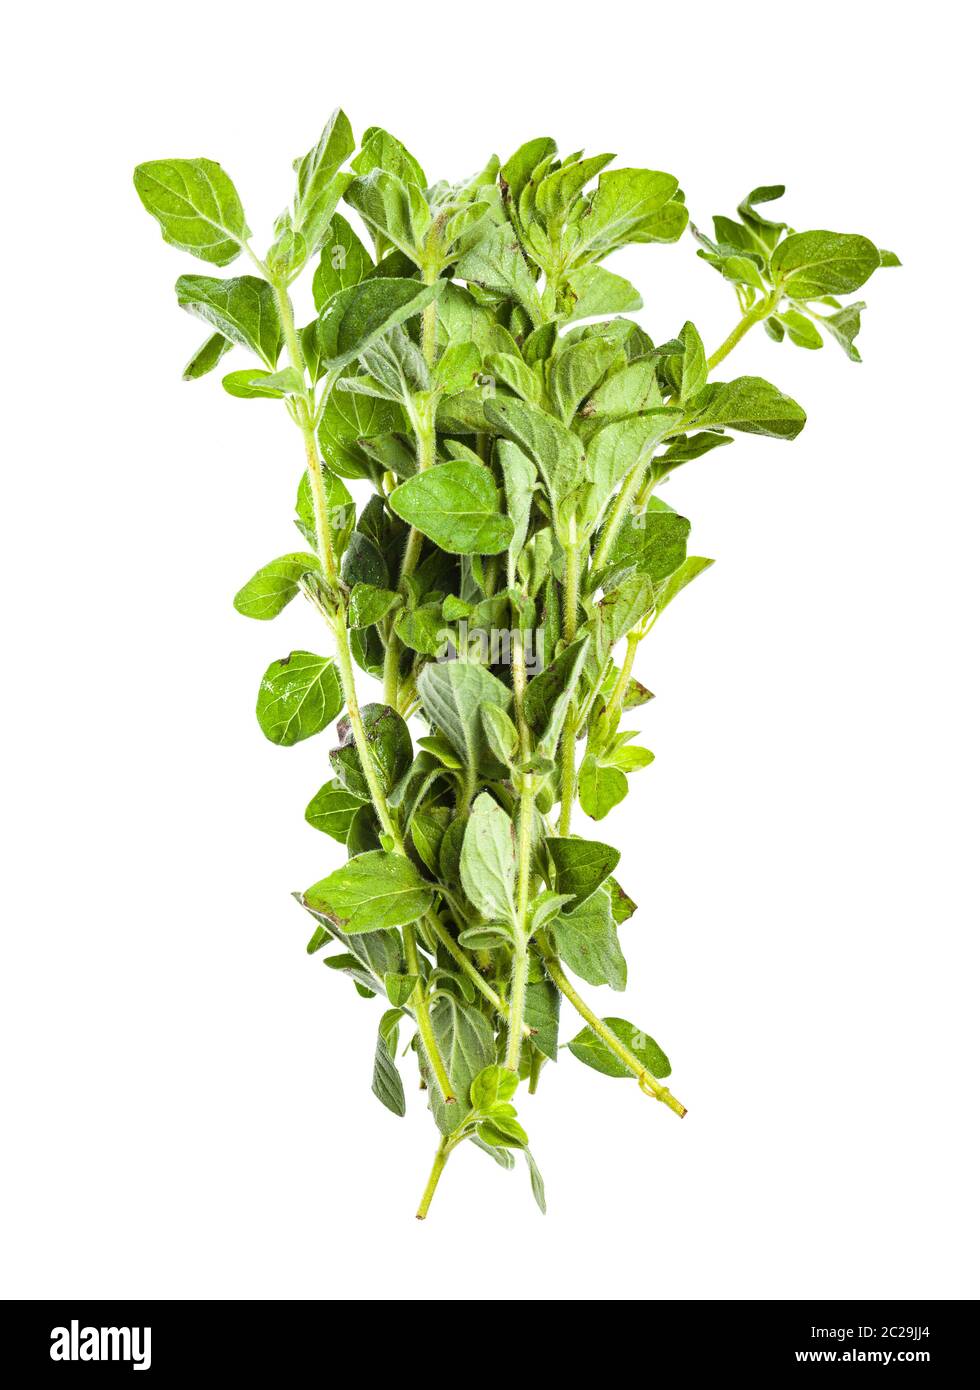 pile of fresh Oregano herb isolated on white background Stock Photo